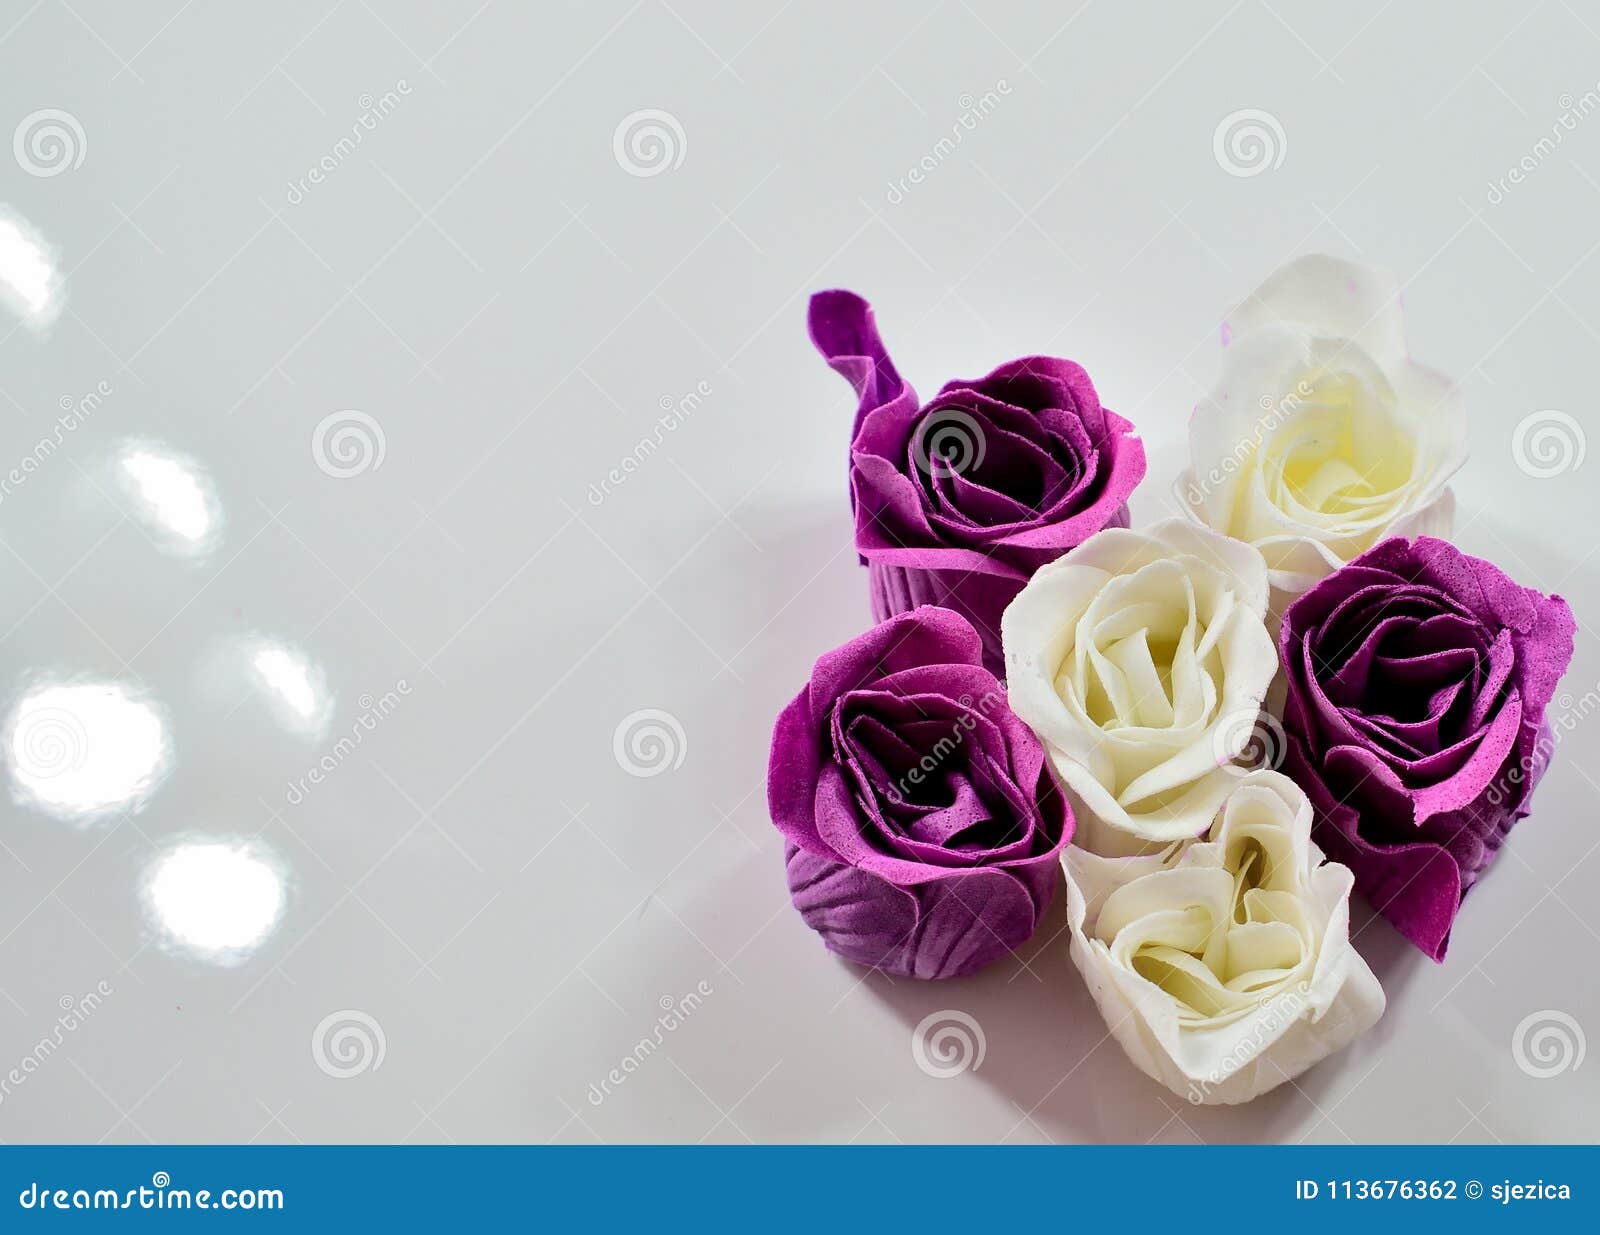 Rosas violetas y blancas foto de archivo. Imagen de presente - 113676362